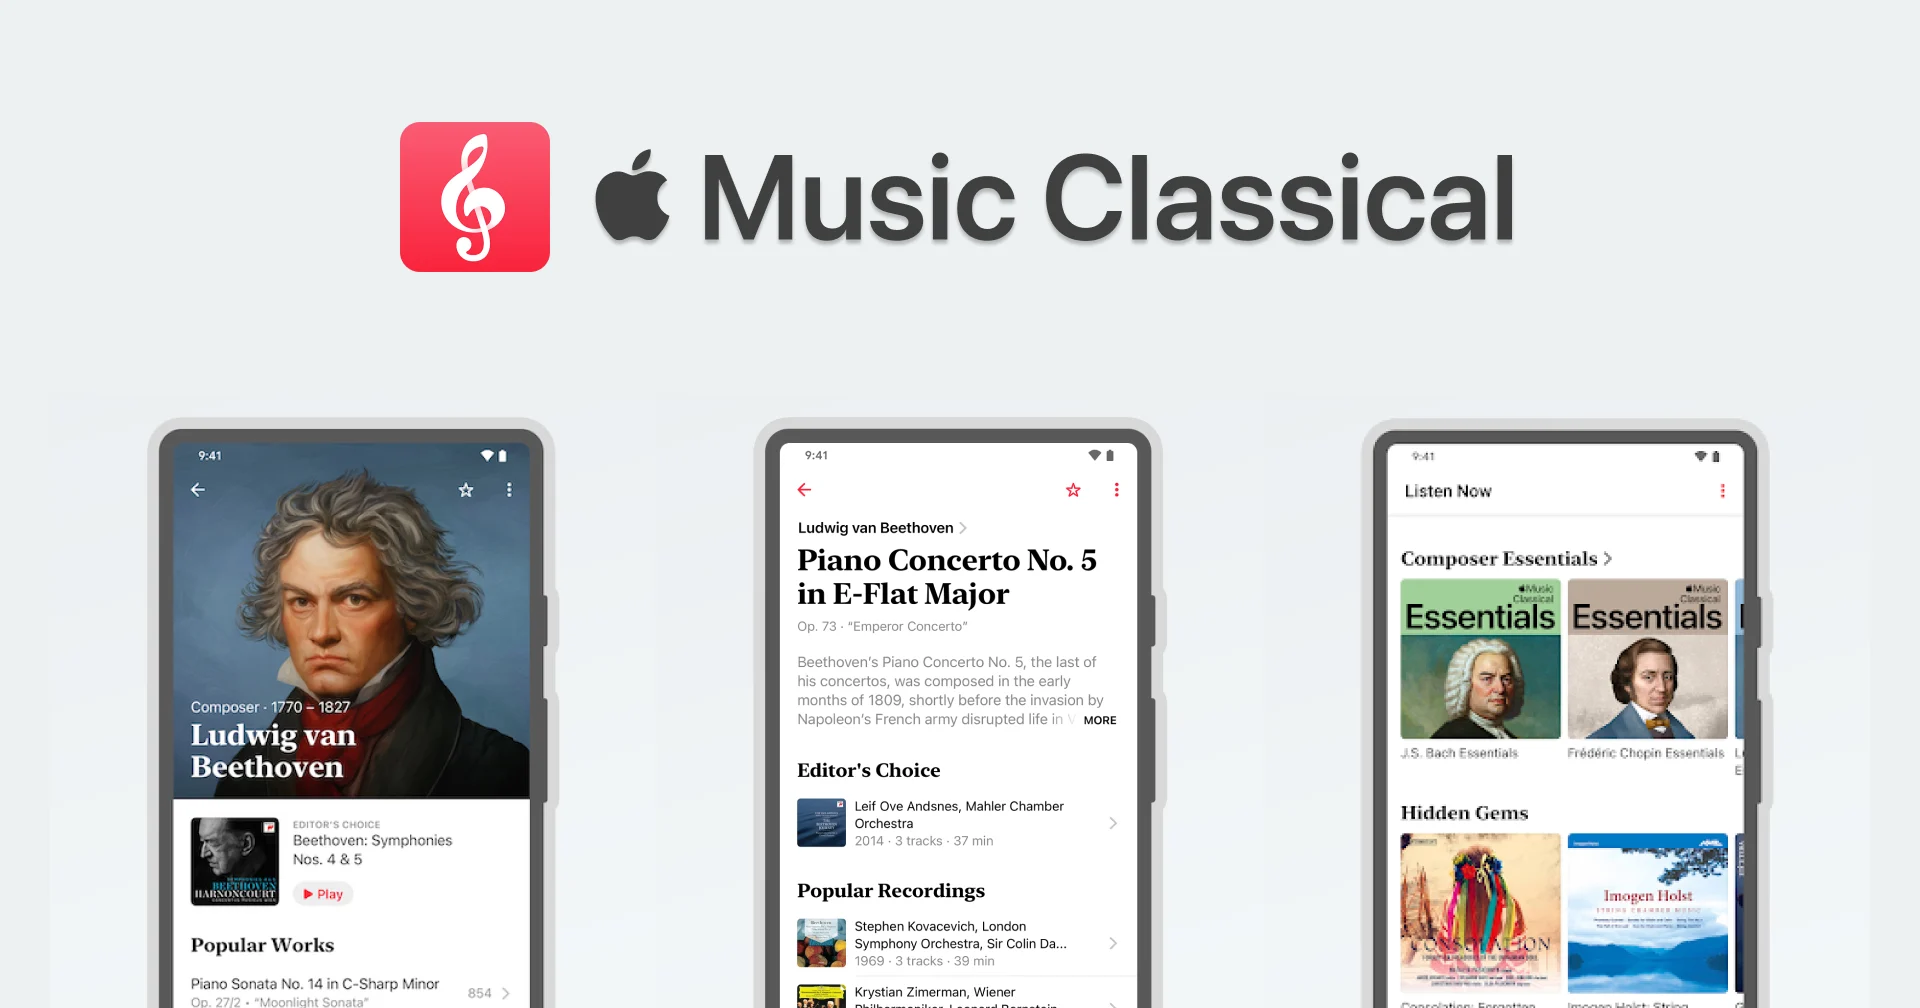 ทางด้าน Apple ปล่อย Apple Music Classical เวอร์ชัน Android แล้ว แต่ iPad และ Mac ยังไม่มา